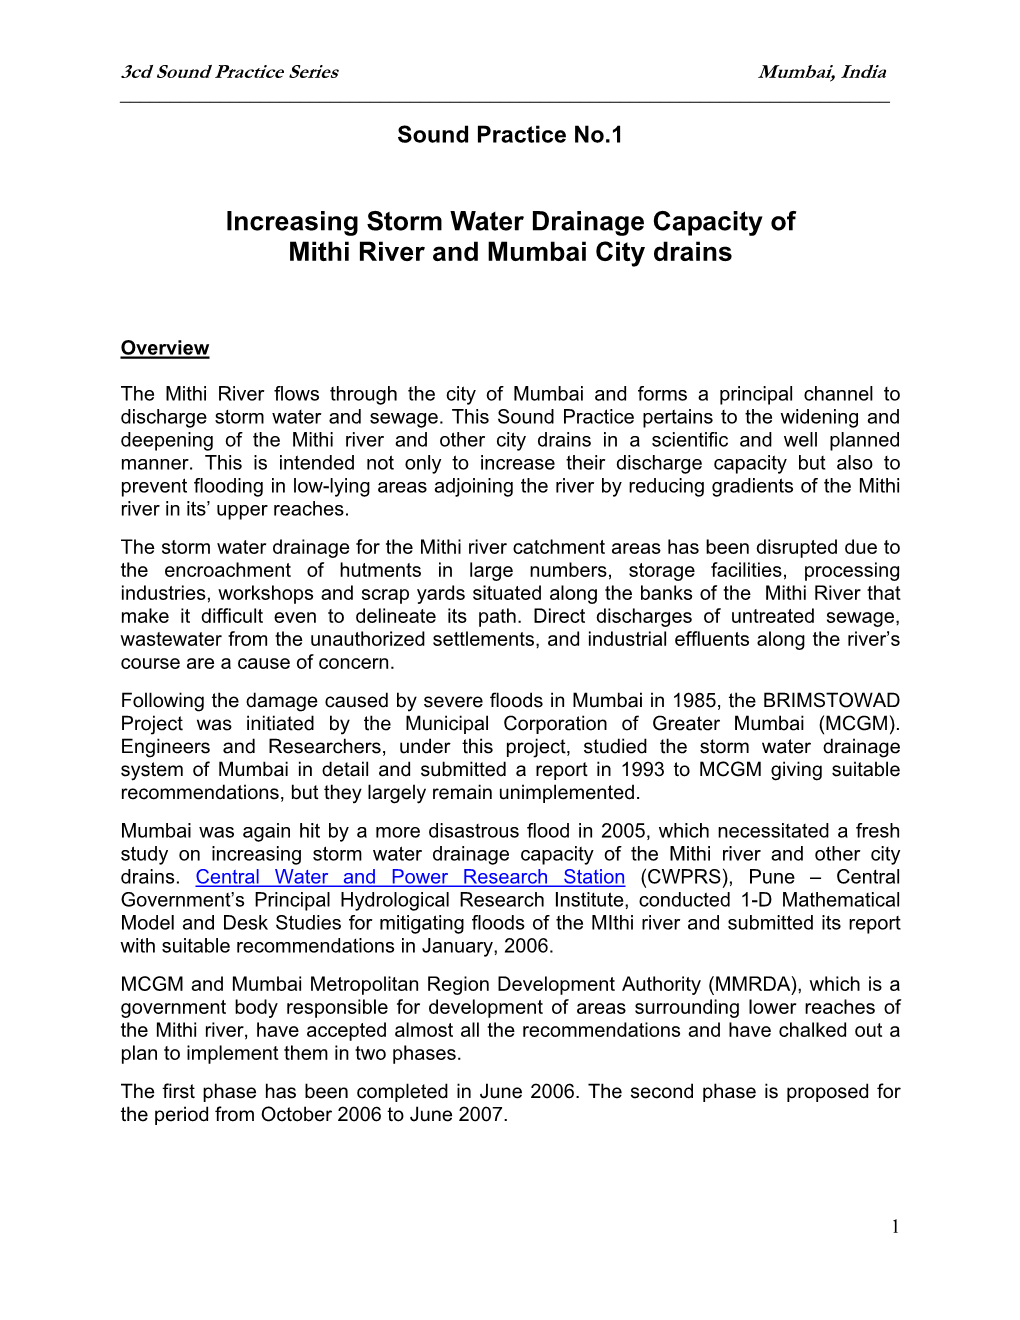 Increasing Storm Water Drainage Capacity of Mithi River and Mumbai City Drains